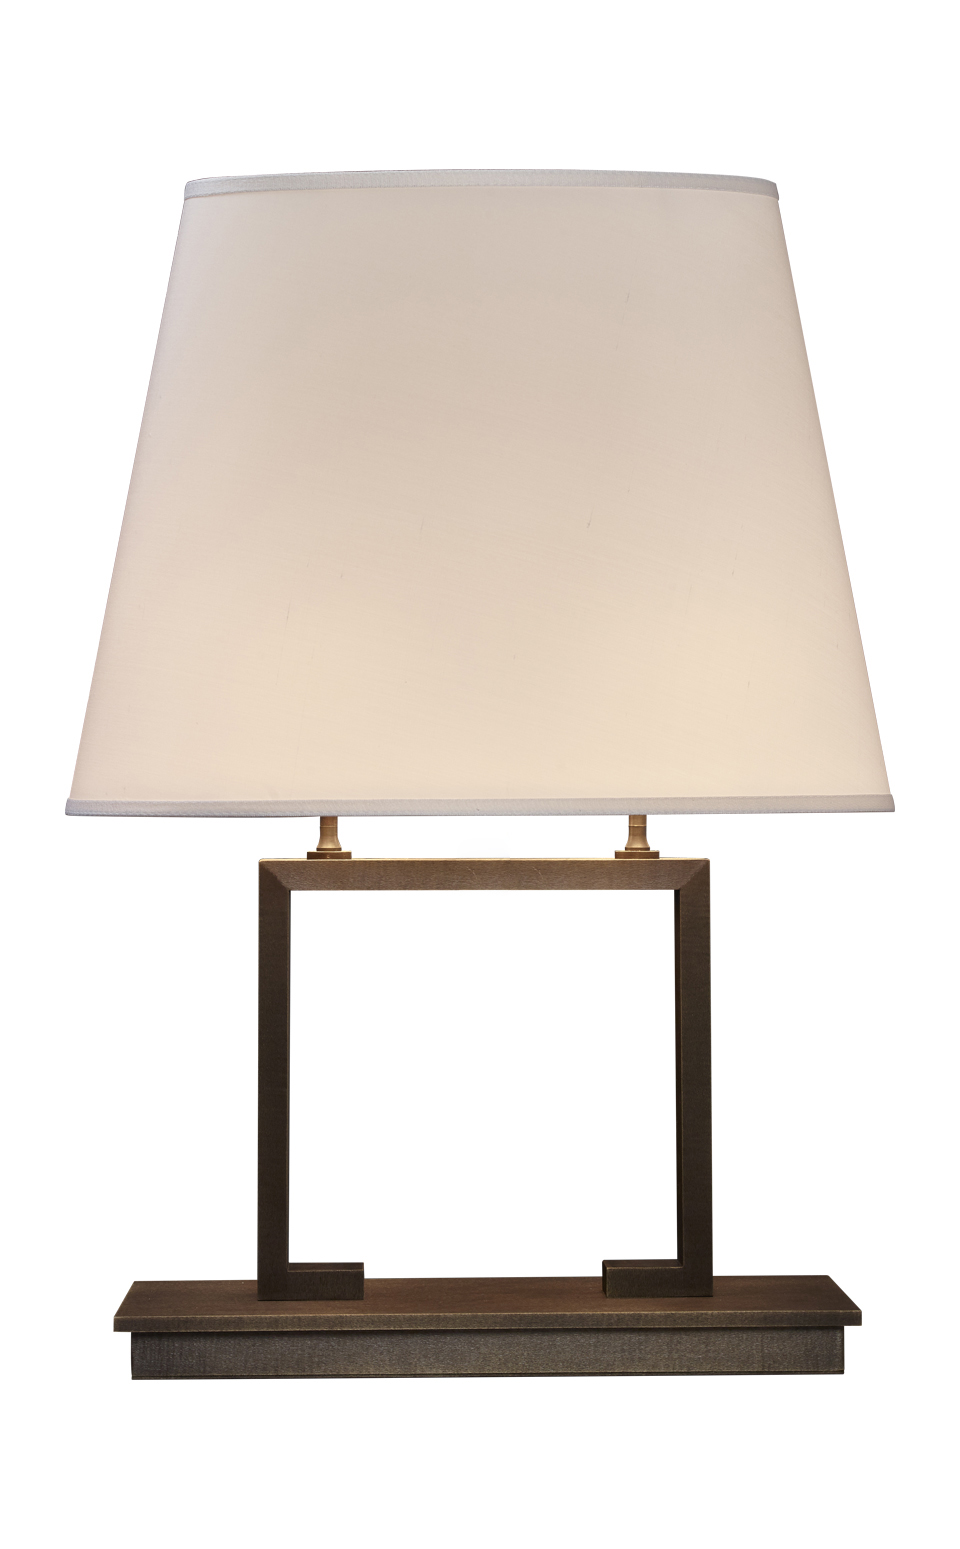 Agatha est une lampe LED à poser, avec un pied en bronze et un abat-jour en lin, coton ou soie avec bordure cousue main. Ce luminaire figure dans le catalogue Promemoria | Promemoria